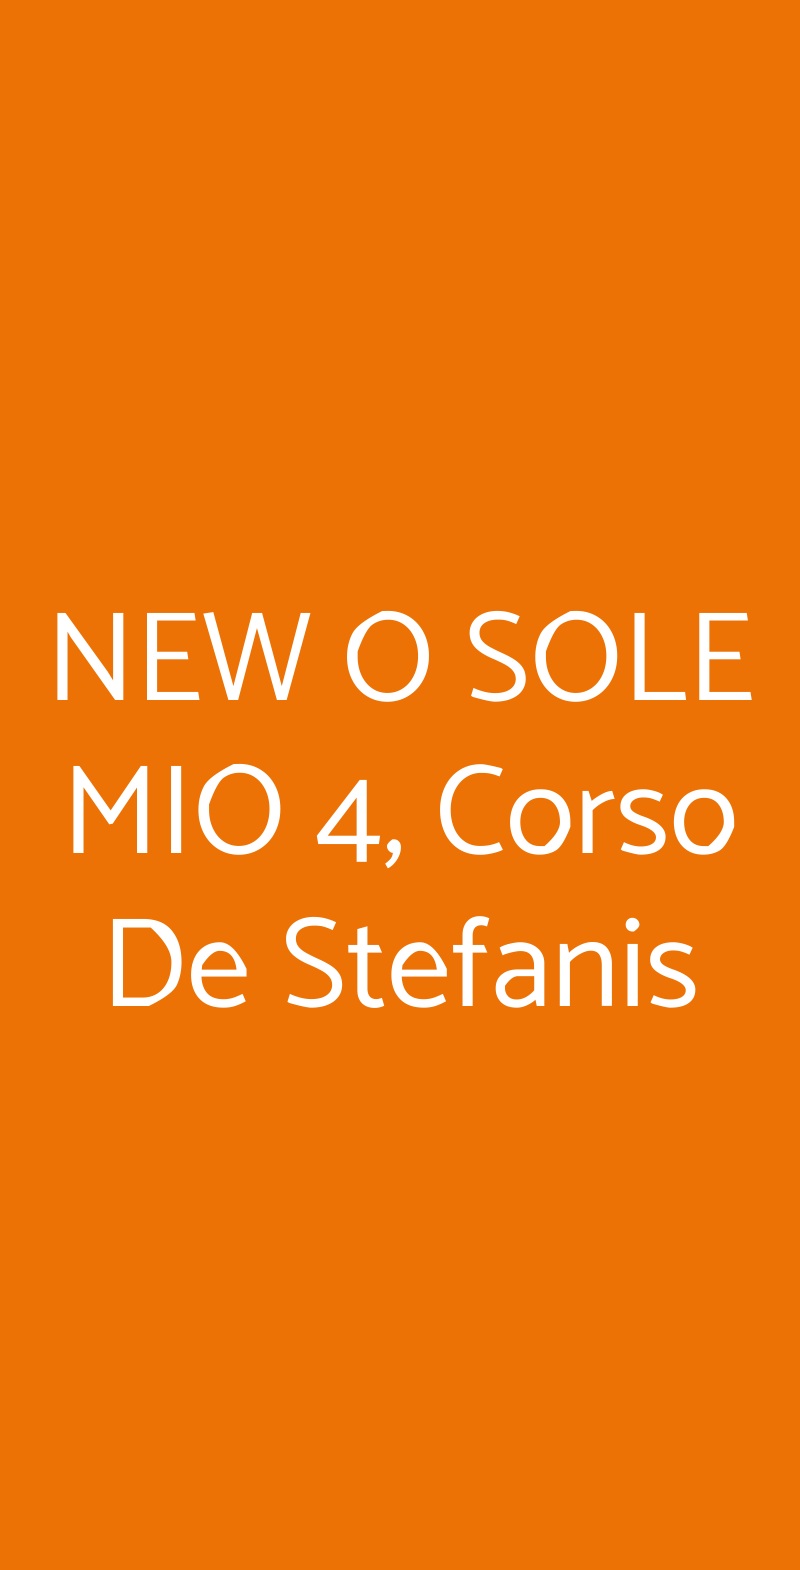 NEW O SOLE MIO 4, Corso De Stefanis Genova menù 1 pagina